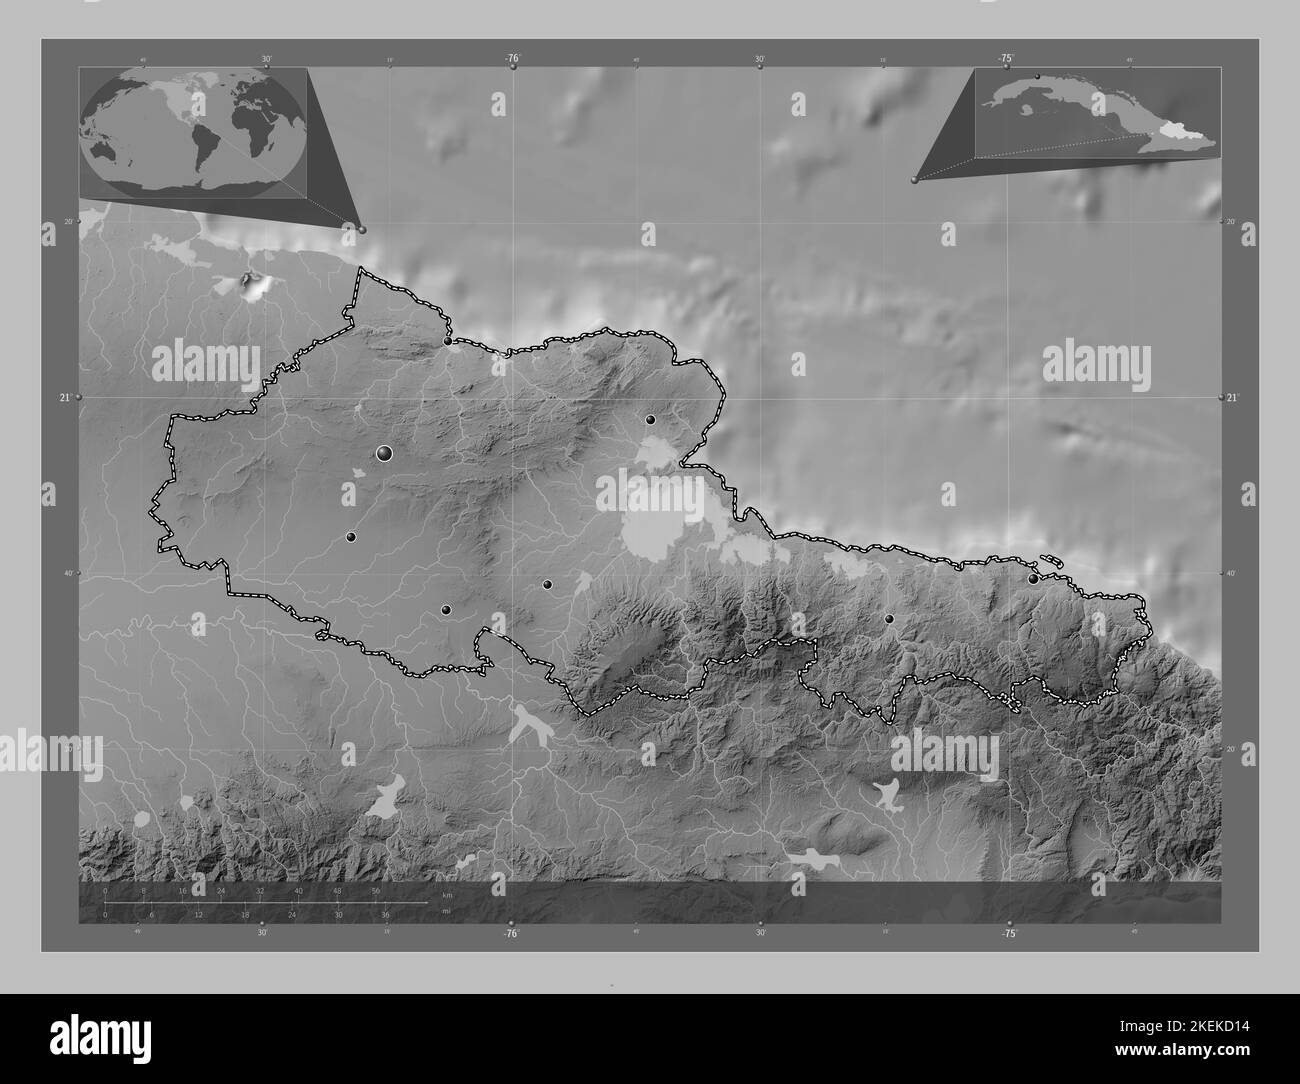 Holguin, province de Cuba. Carte d'altitude en niveaux de gris avec lacs et rivières. Lieux des principales villes de la région. Cartes d'emplacement auxiliaire d'angle Banque D'Images